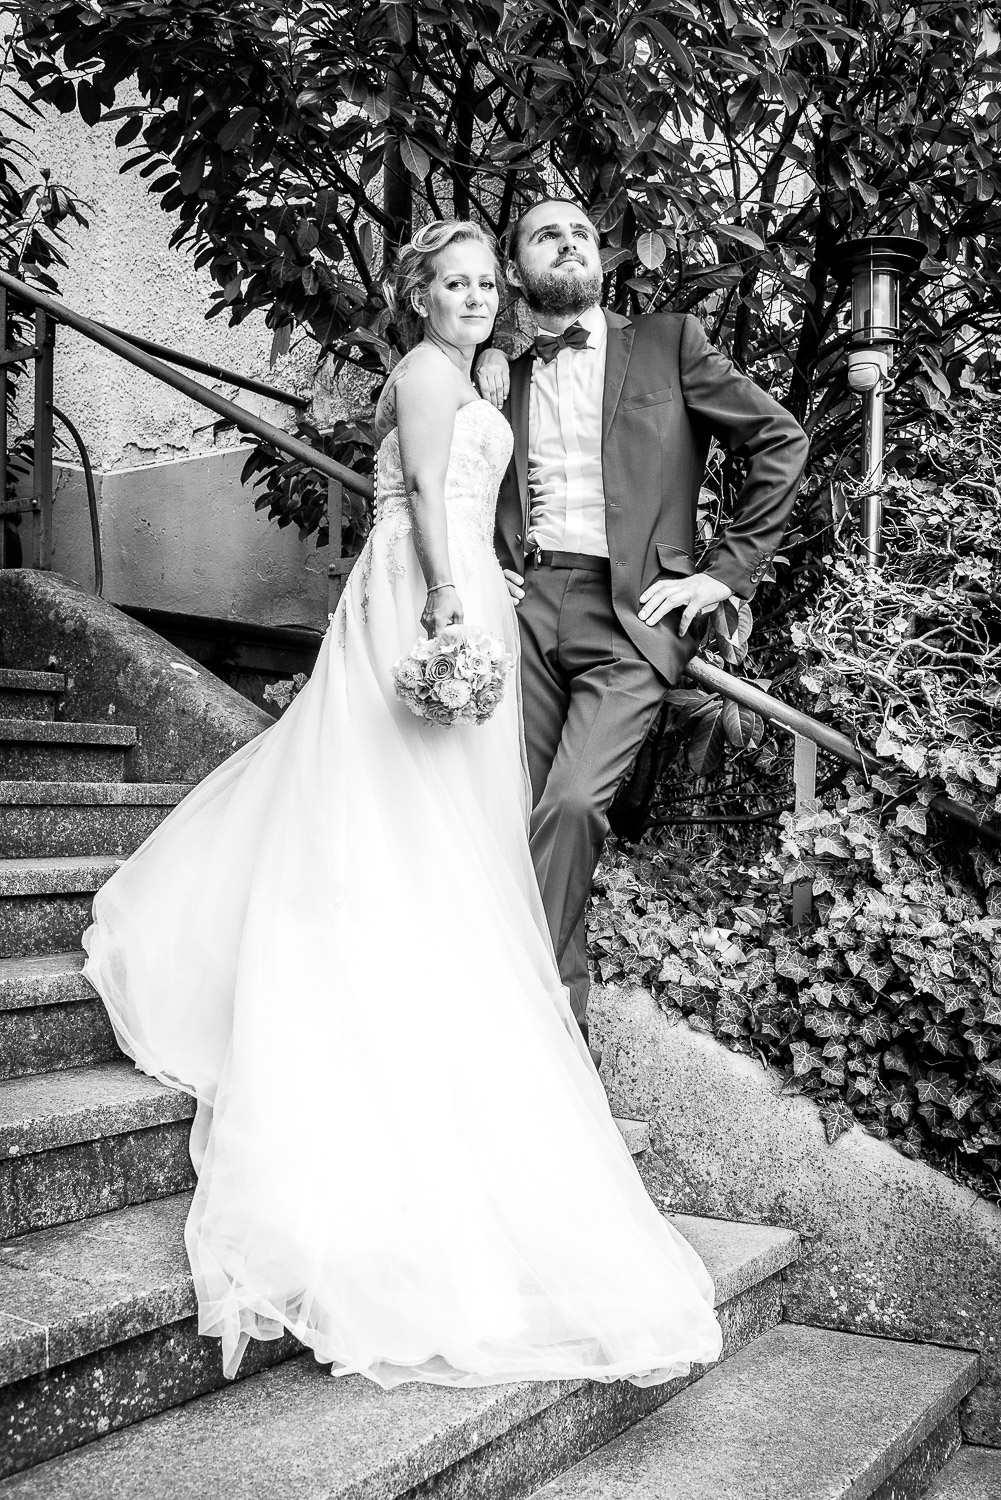 Brautpaarportrait auf Treppe